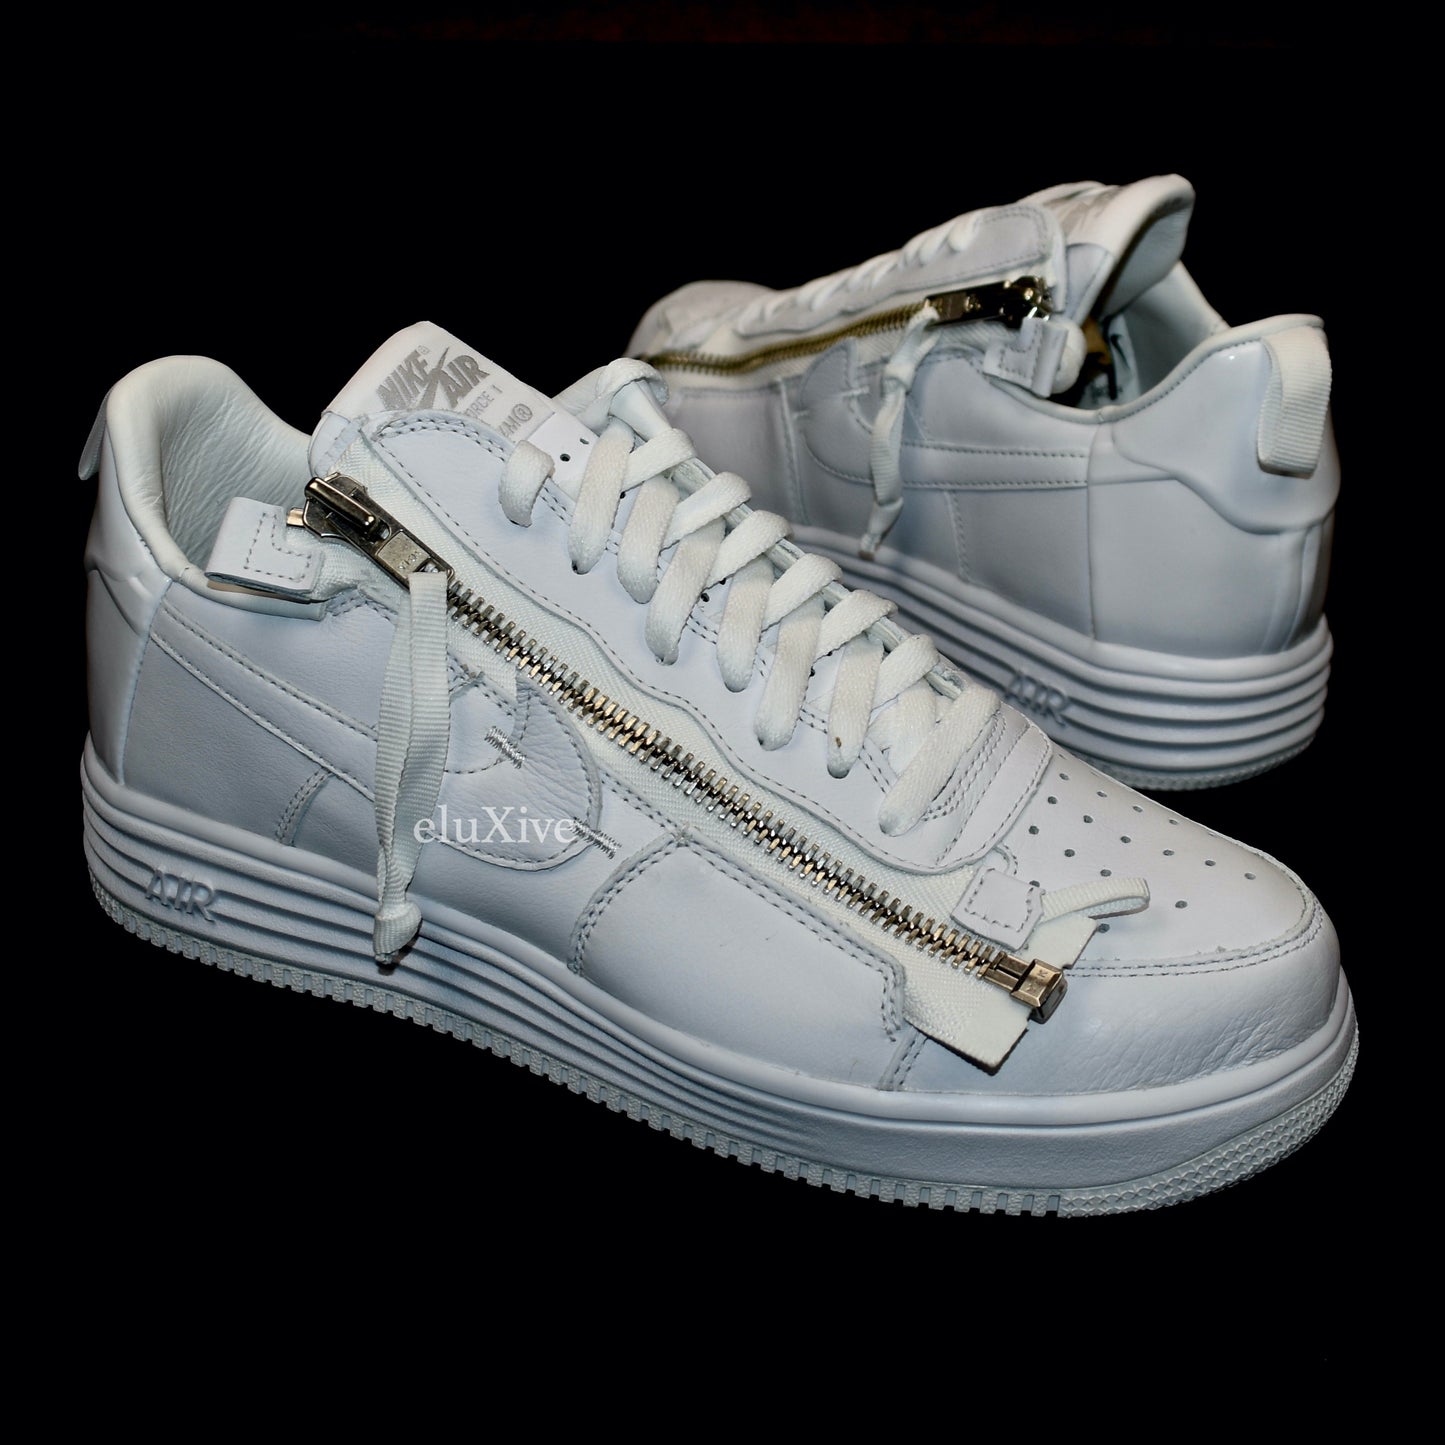 Nike x Acronym - Air Force 1 Lunar '17 'AF-100' (White)